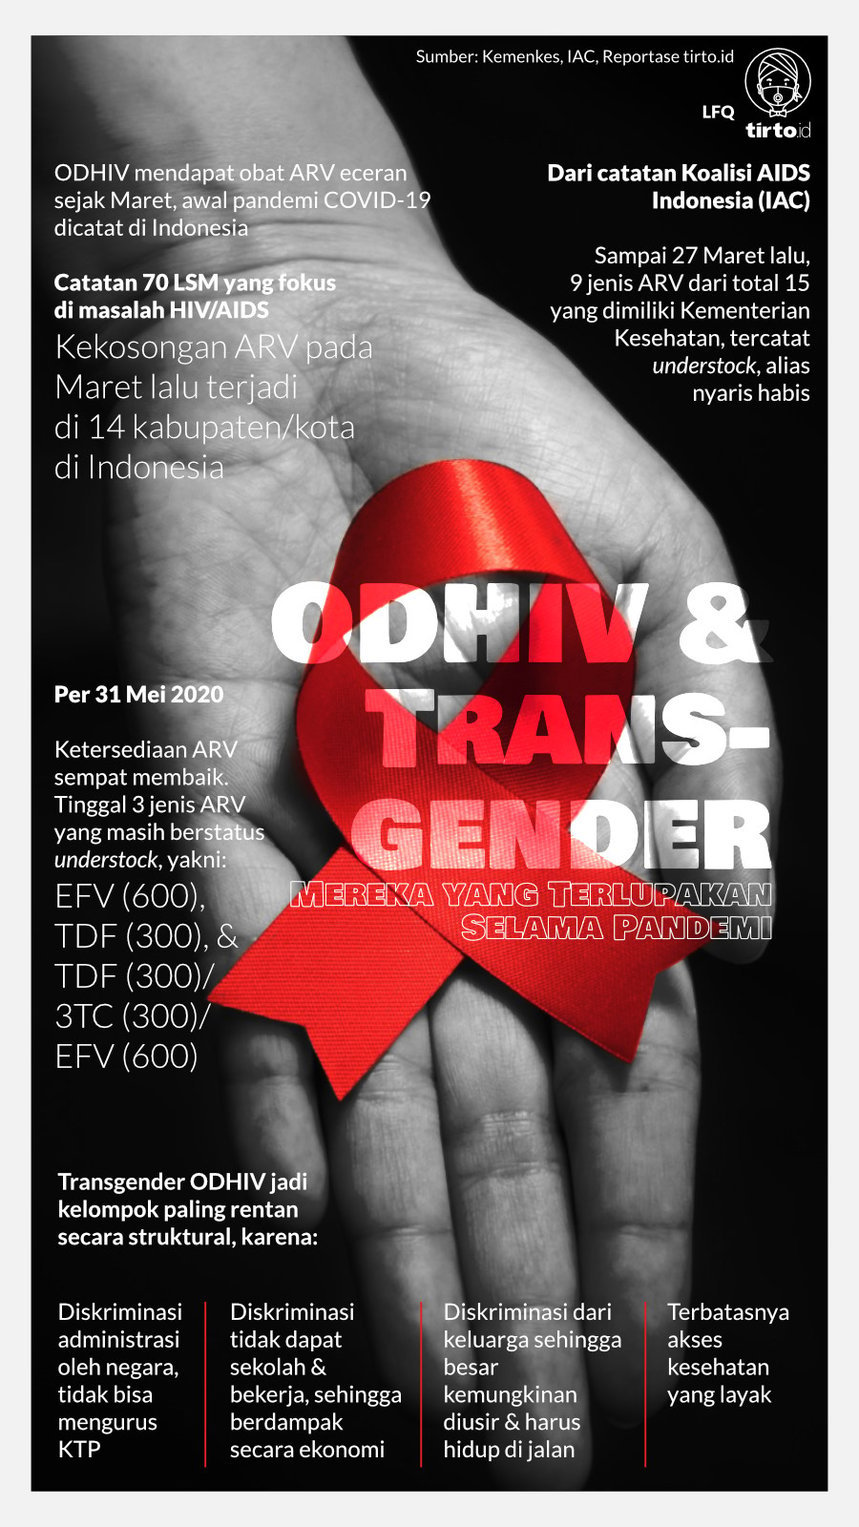 Infografik Odhiv dan Transgender